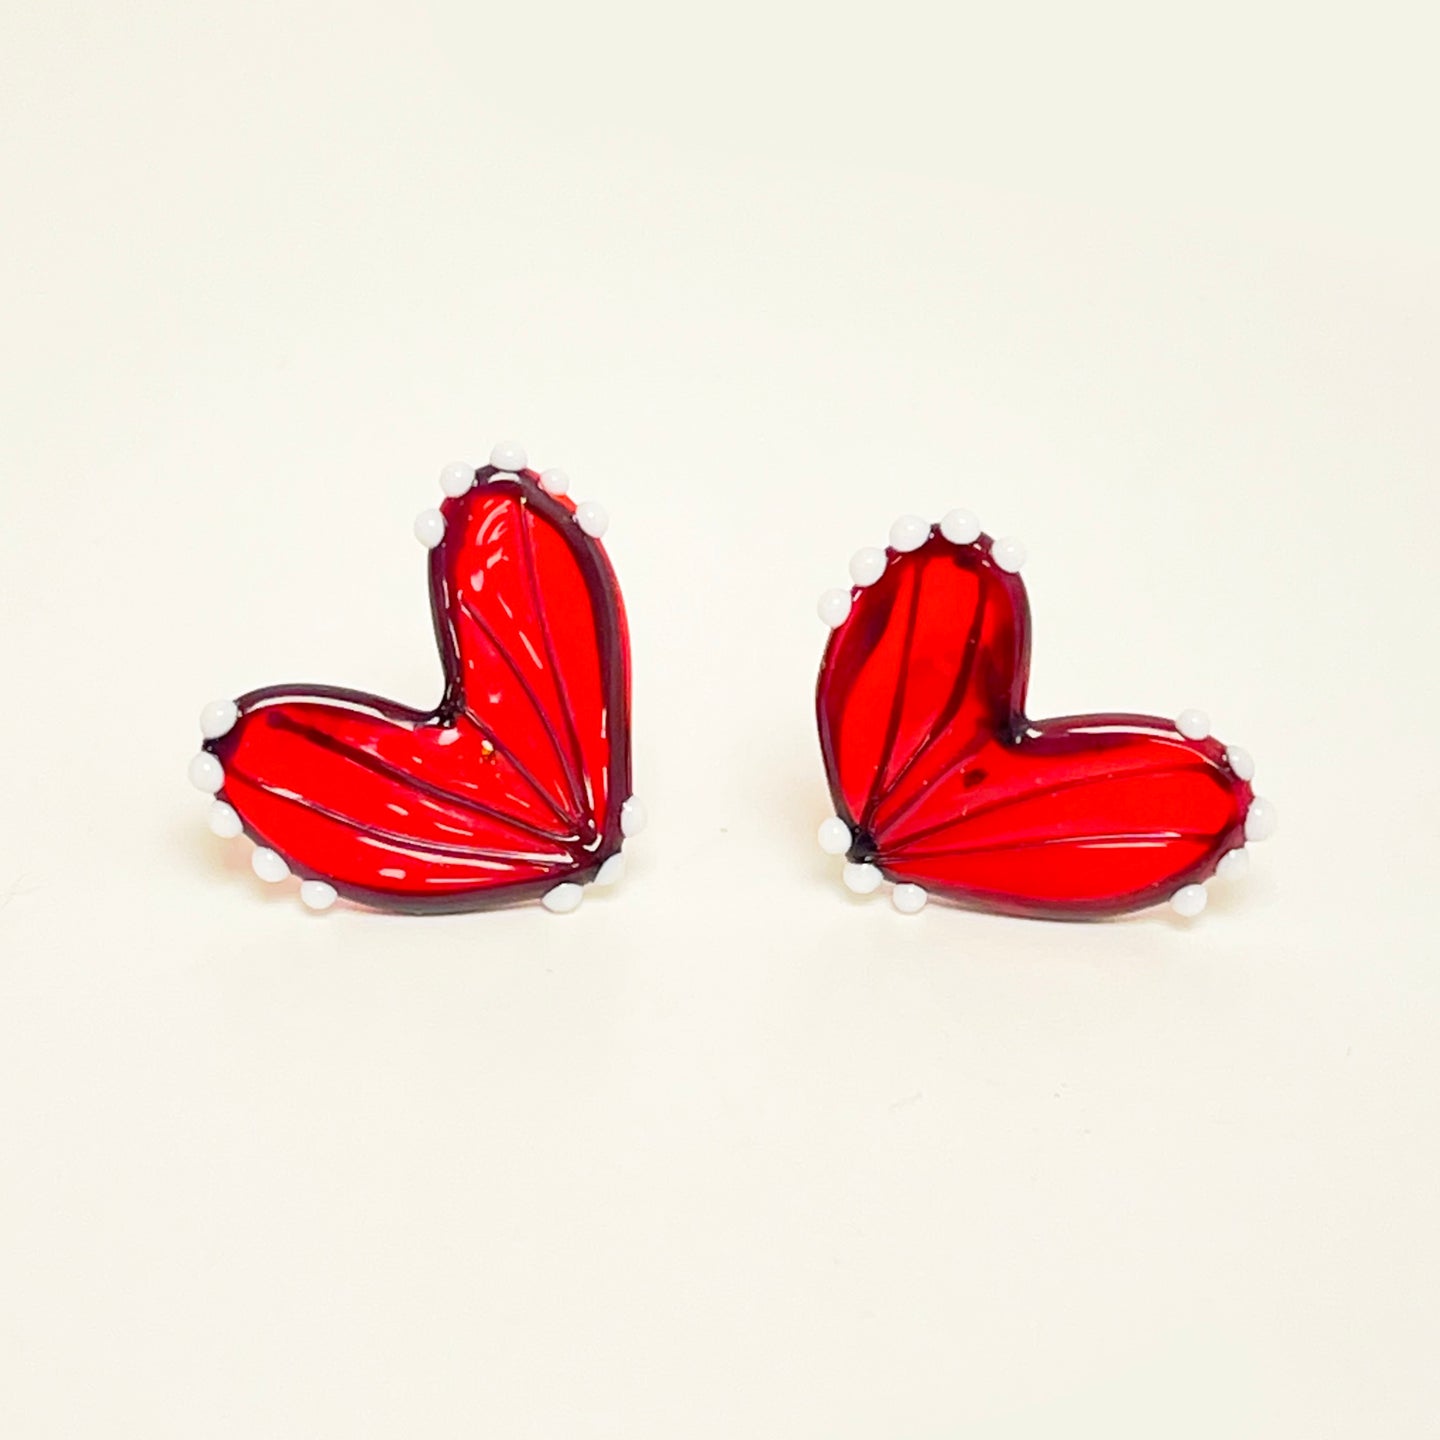 Glass butterfly wings stud earrings - red